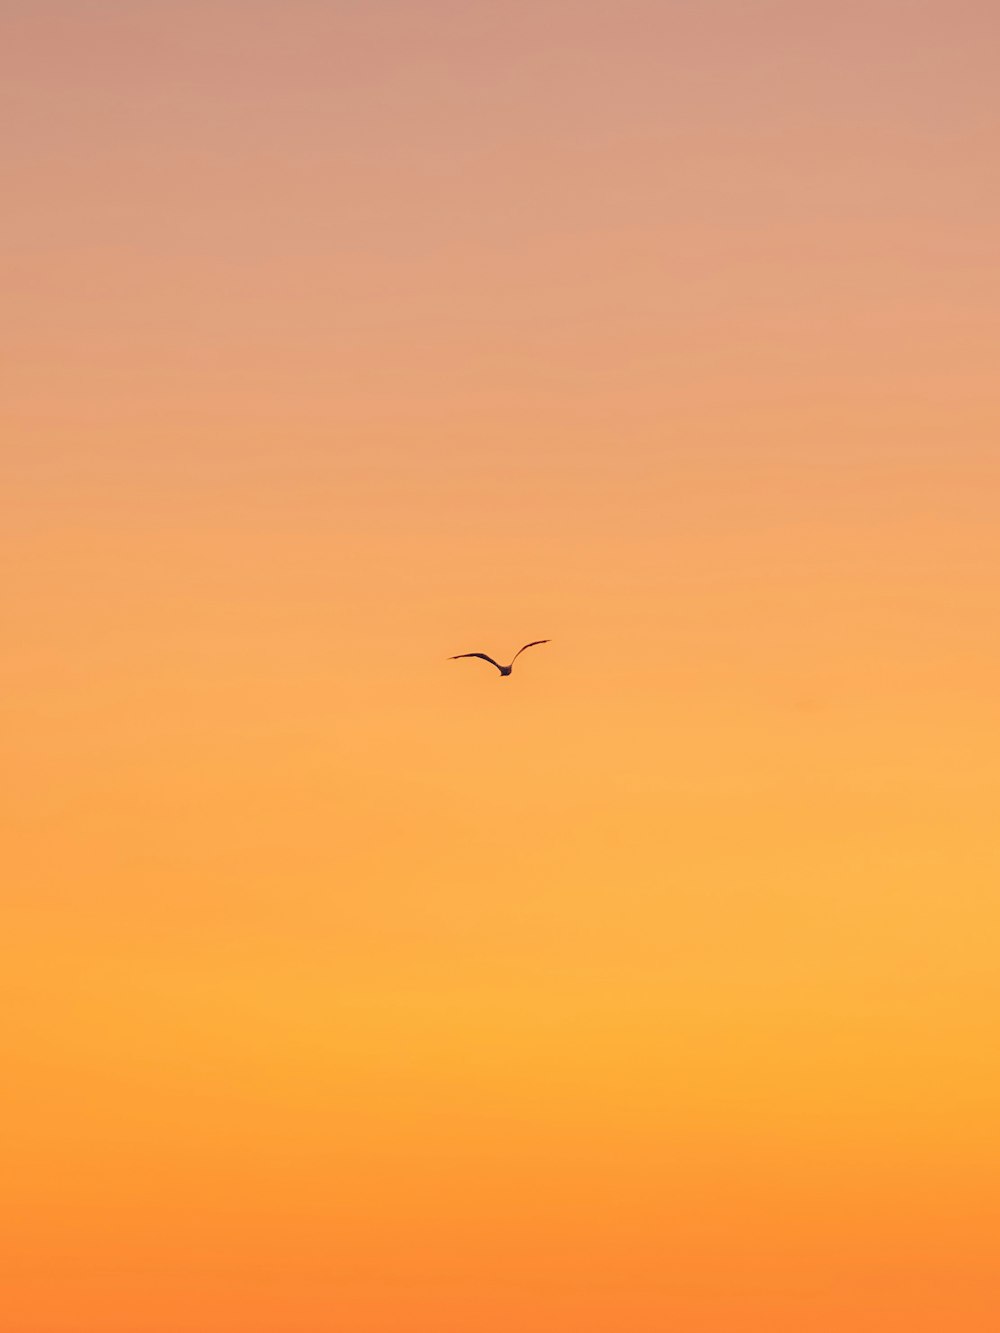 Hình ảnh chim bay trong ban ngày với màu cam tươi sáng trên Unsplash sẽ mang lại cho bạn cảm giác thoải mái và tươi vui. Khi nhìn vào hình ảnh này, bạn sẽ cảm nhận được tinh thần tự do và sự bình yên trong thiên nhiên. Hãy cùng chúng tôi khám phá vẻ đẹp của những sinh vật đáng yêu này.